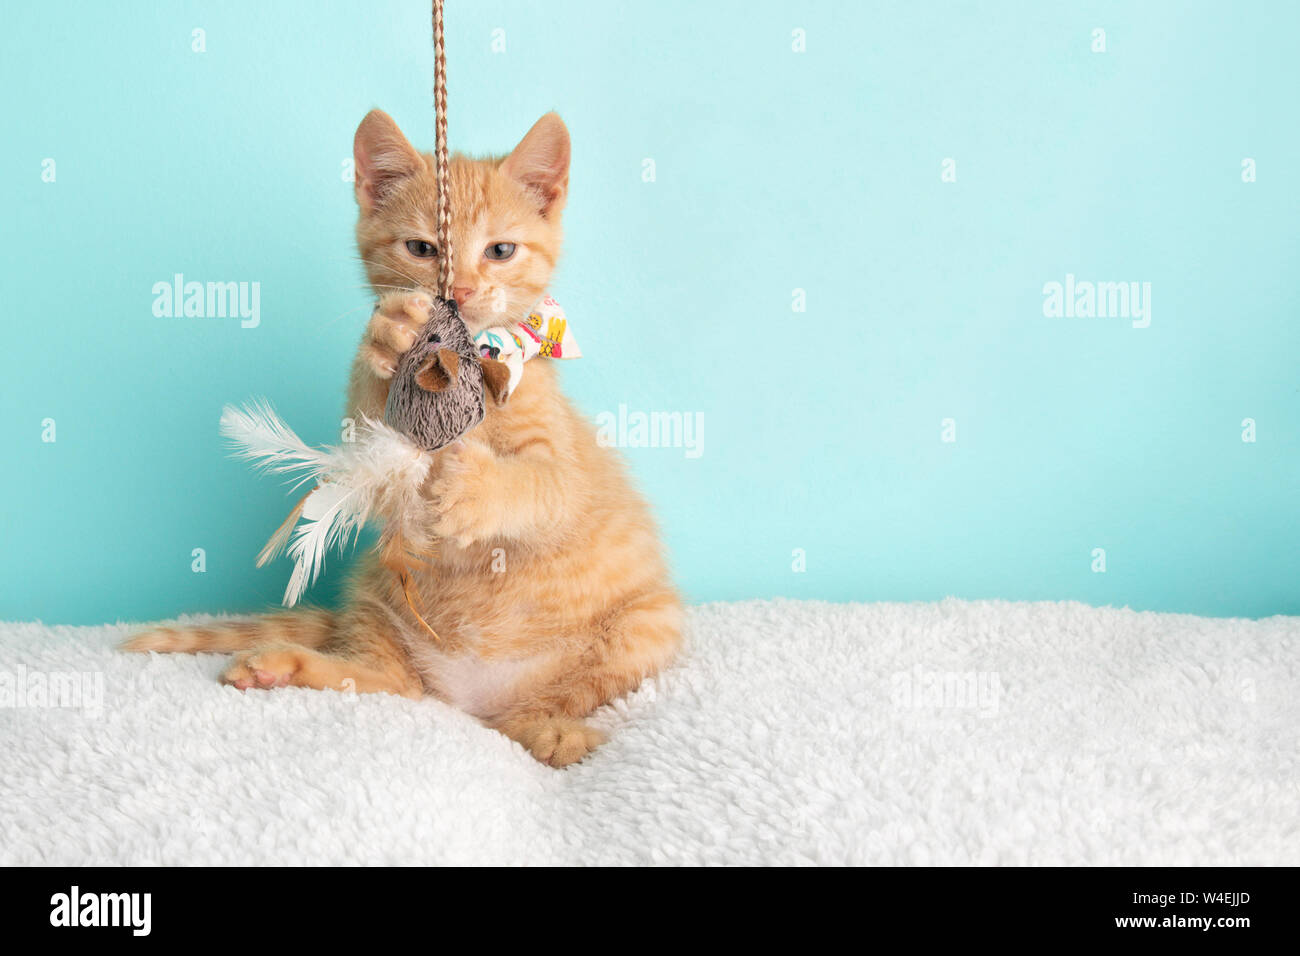 Carino giovane Orange Tabby Gattino Rescue indossando fiore bianco Bow Tie seduta divertente giocare con la stringa e Mouse Toy su sfondo blu Foto Stock